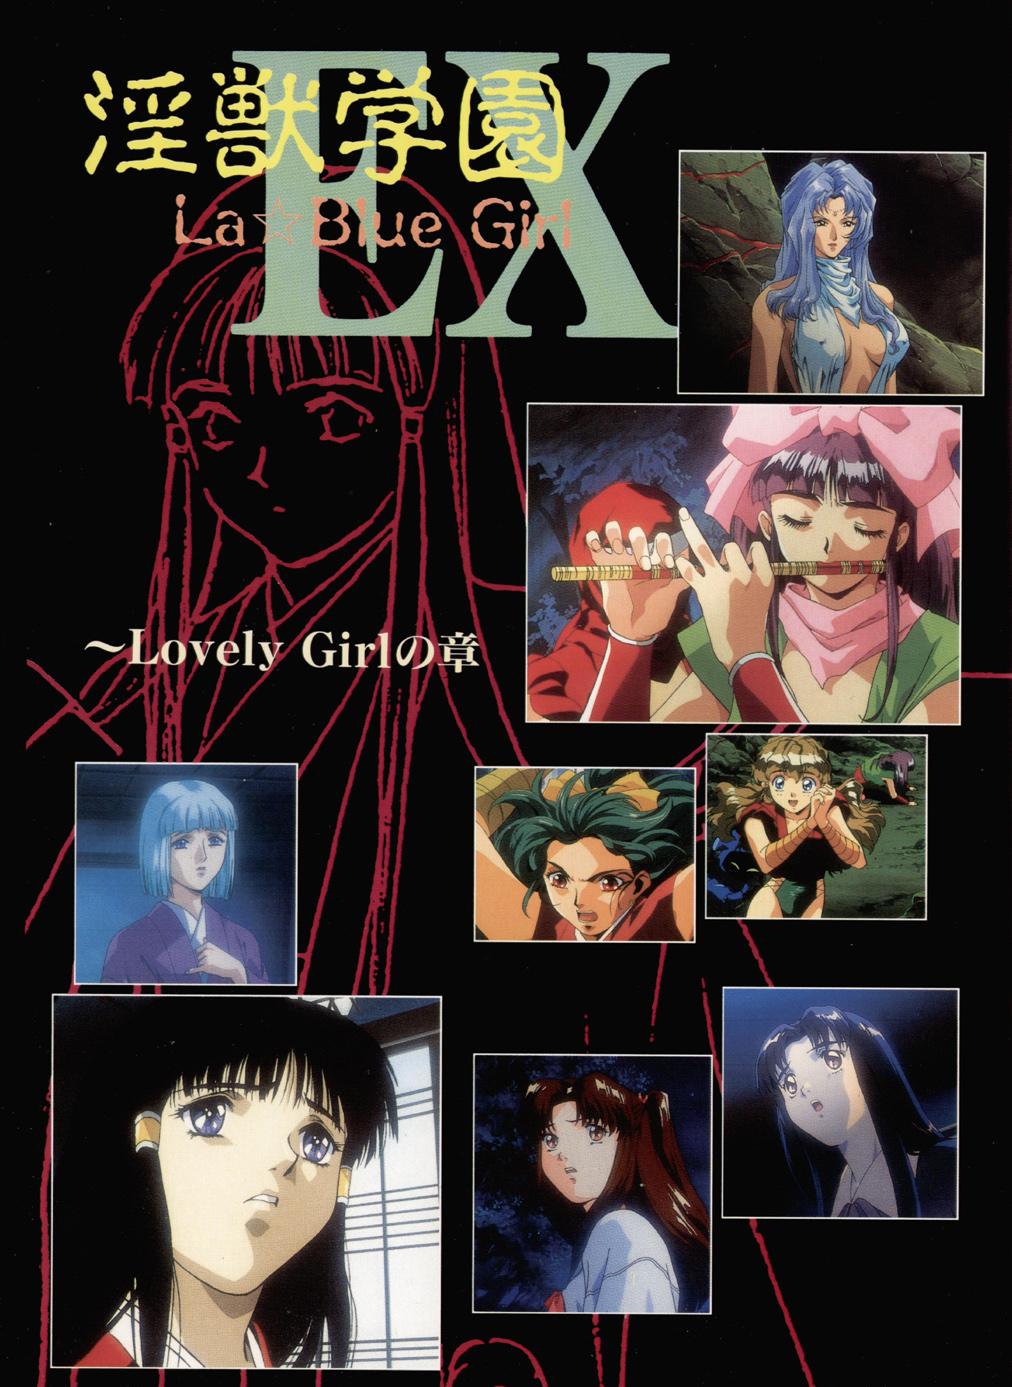 La Blue Girl Artbook 6